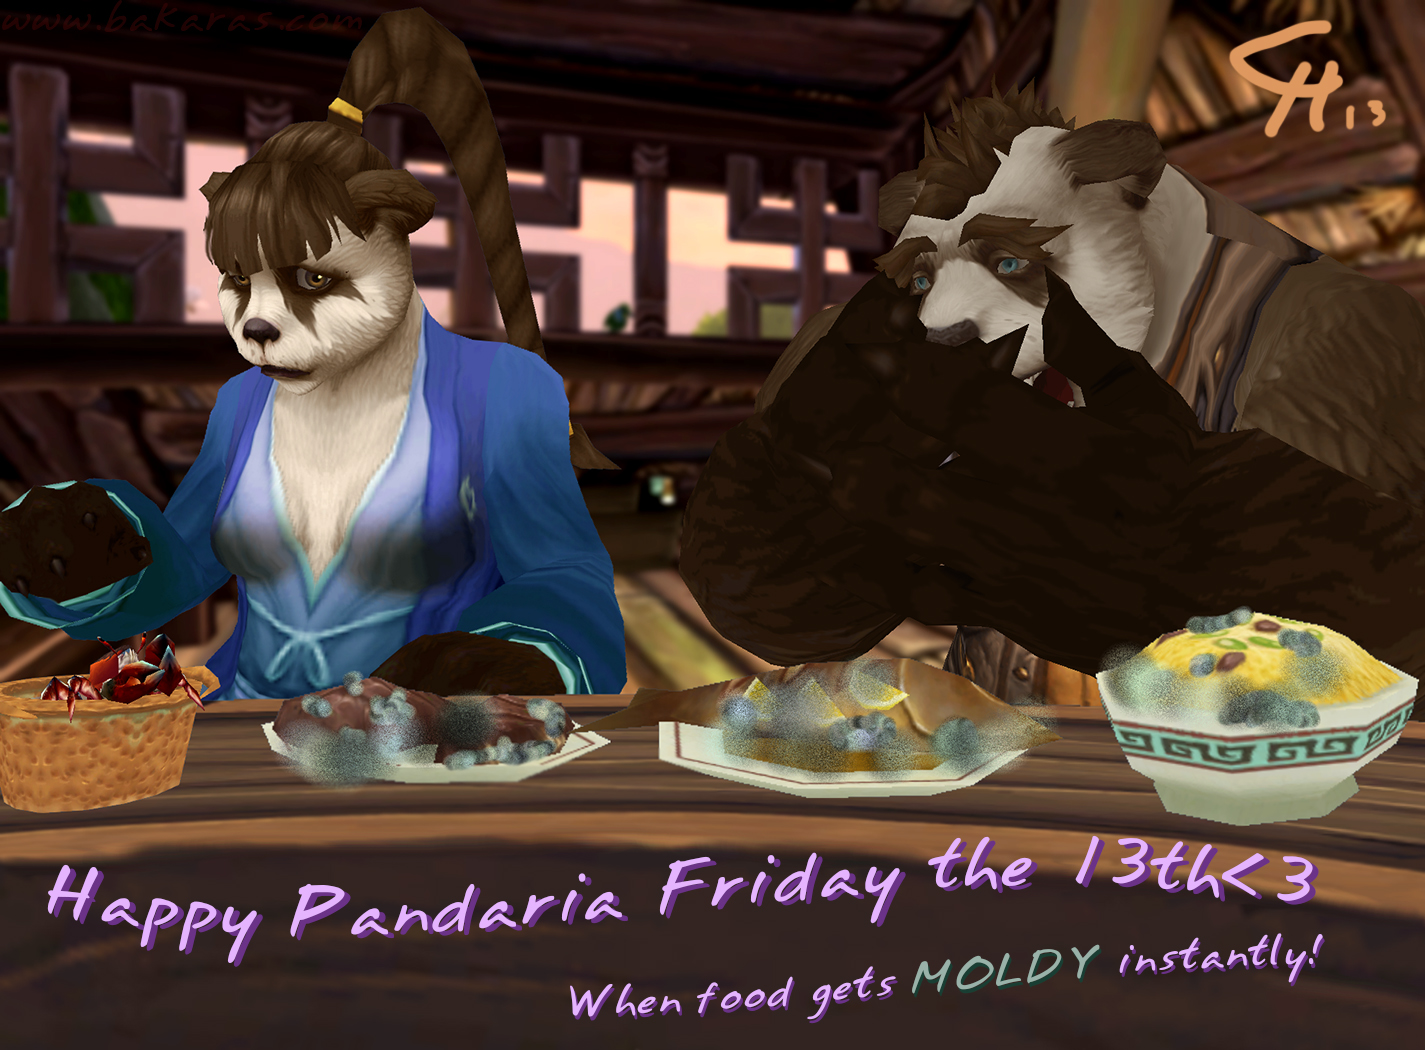 Pandaria Friday the 13th [Filler/Pandaren/SFW]
In Pandaria, foods gets all moldy if not eaten instantly on Friday the 13th!
Keywords: Pandaren;SFW;Filler